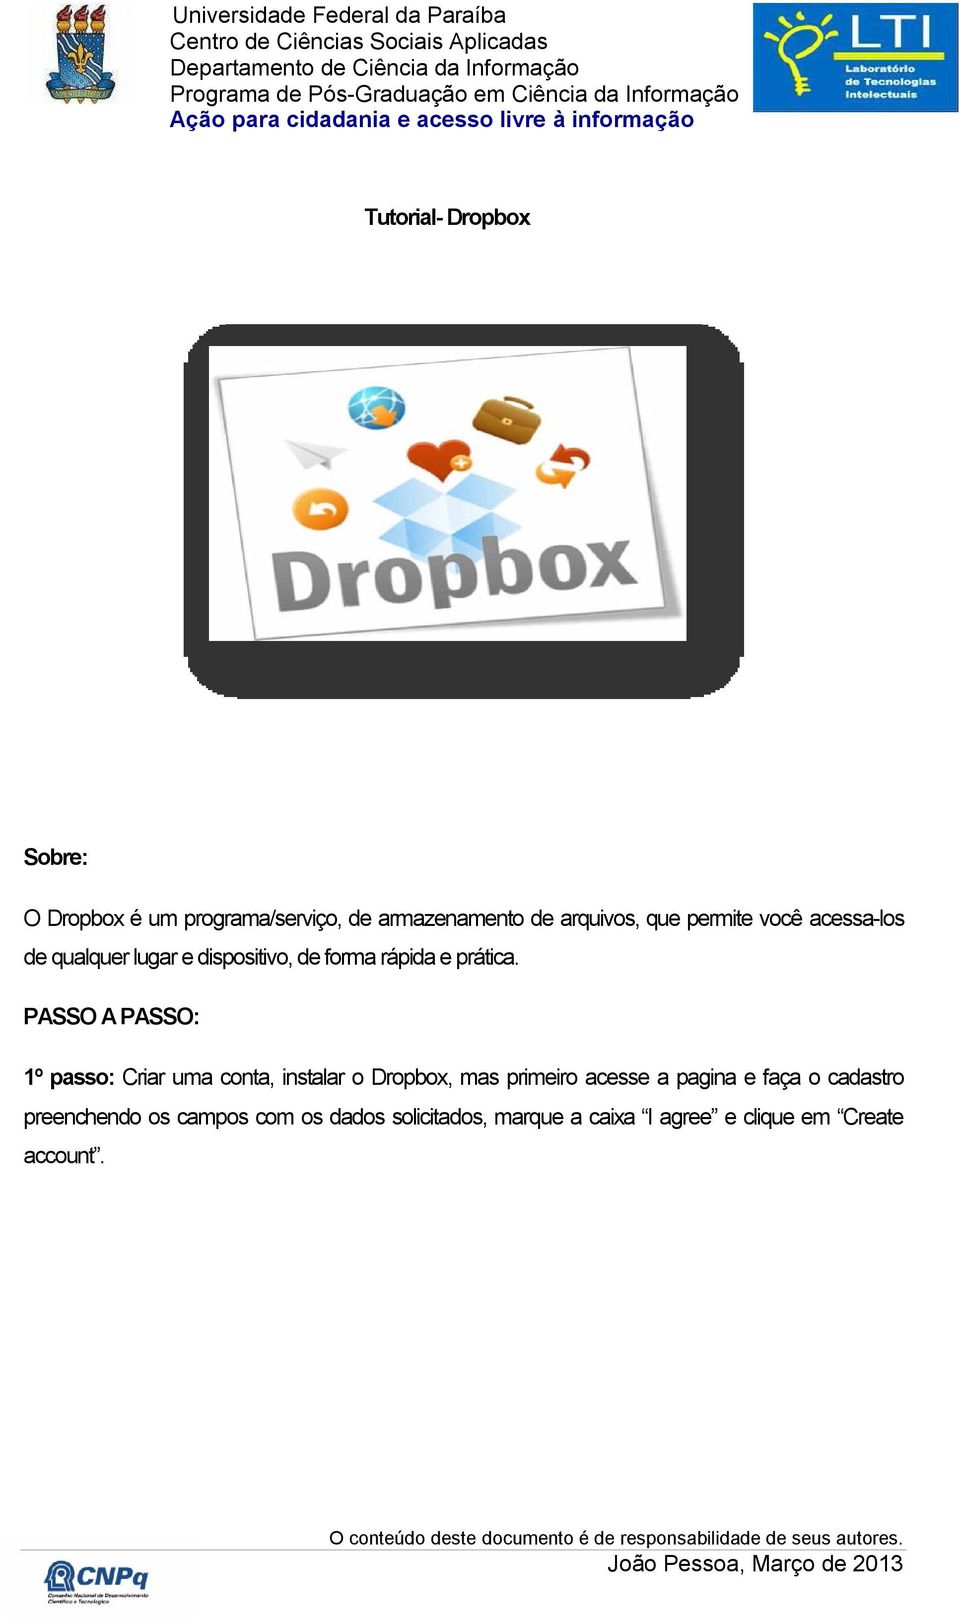 PASSO A PASSO: 1º passo: Criar uma conta, instalar o Dropbox, mas primeiro acesse a pagina e